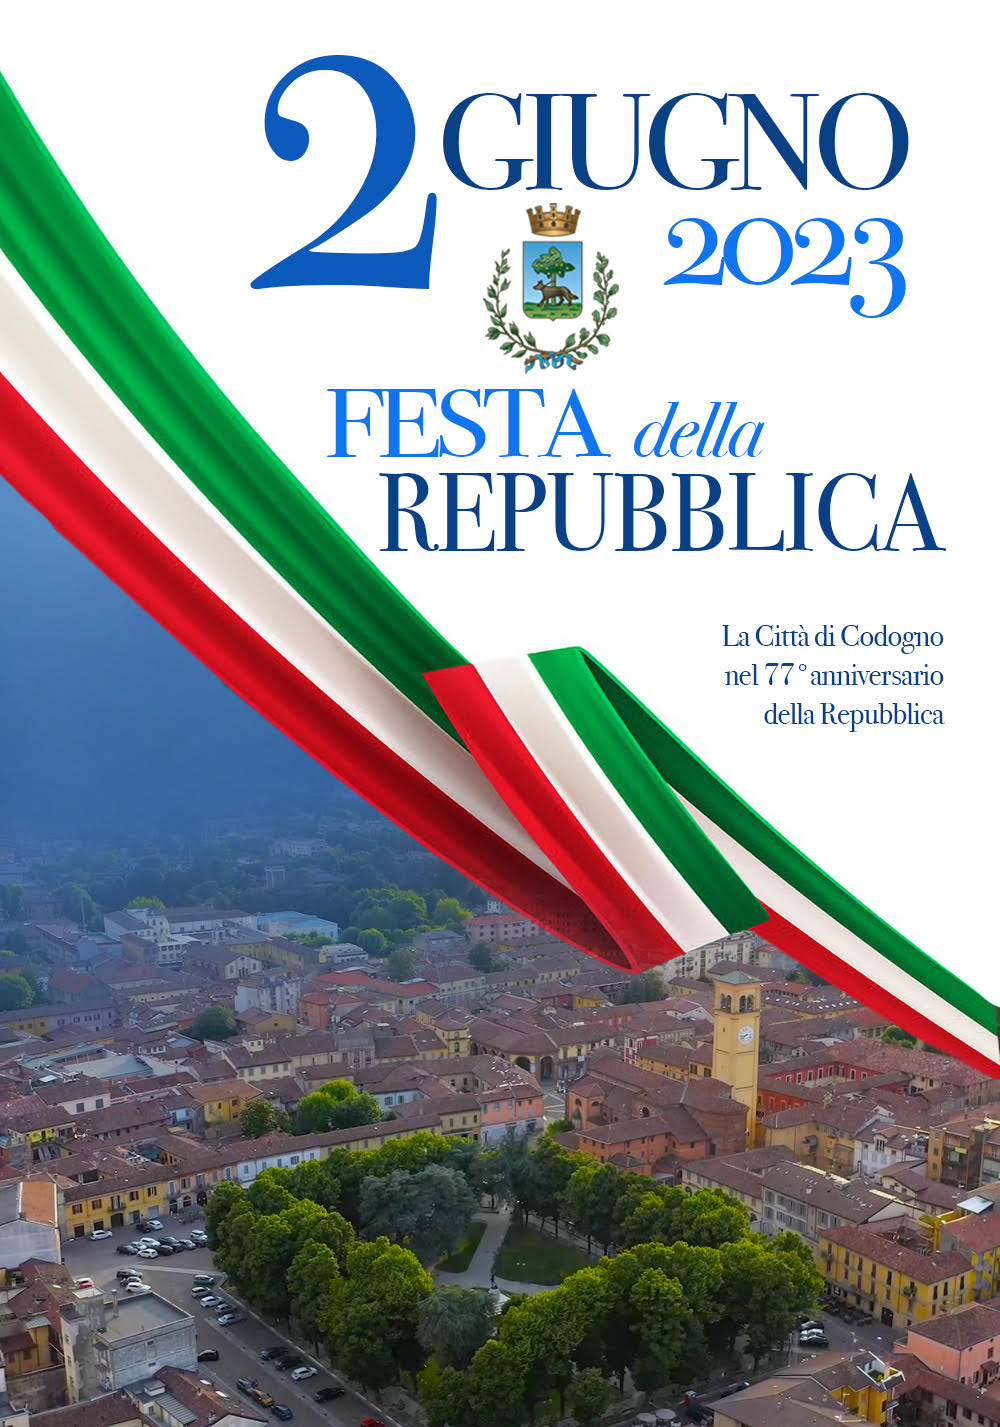 Locandina 2 giugno 2023 Festa della repubblica